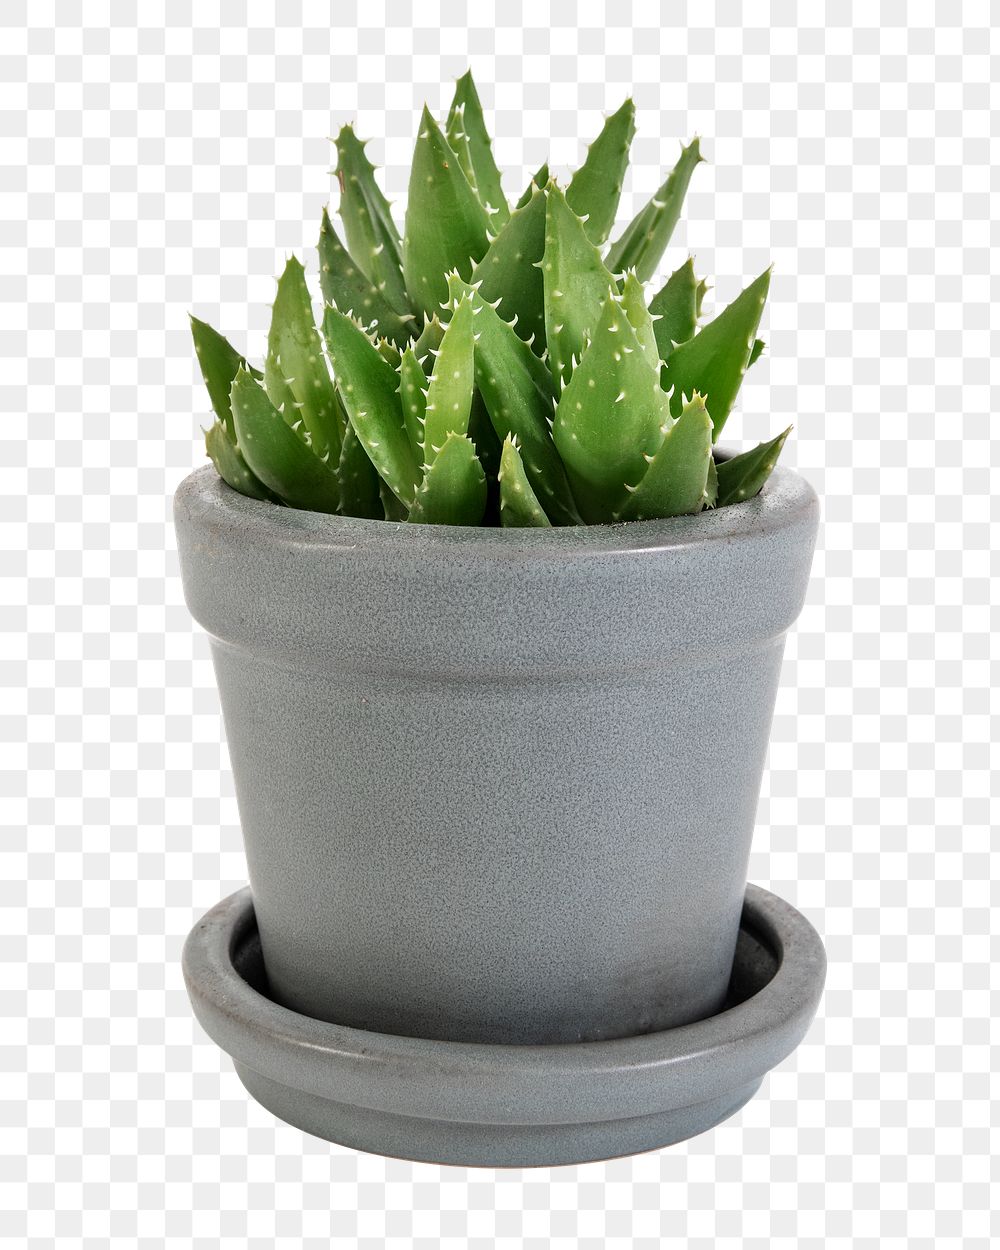 Aloe png mockup in a ceramic pot